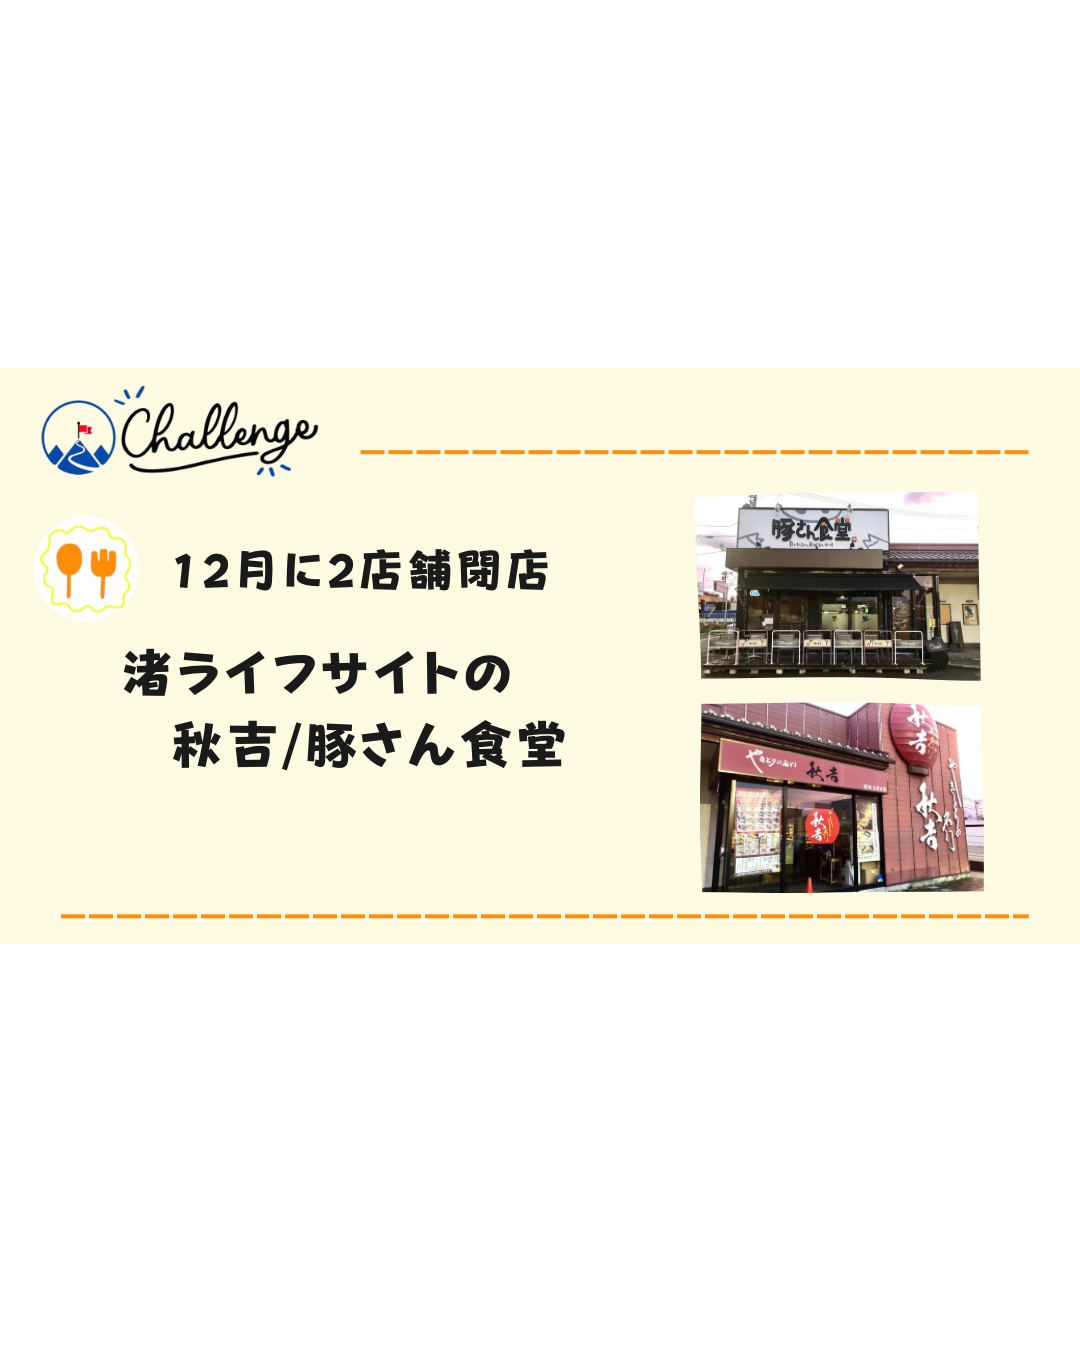 【2店舗閉店】渚ライフサイト「秋吉」12月20日「豚さん食堂」12月27日閉店。